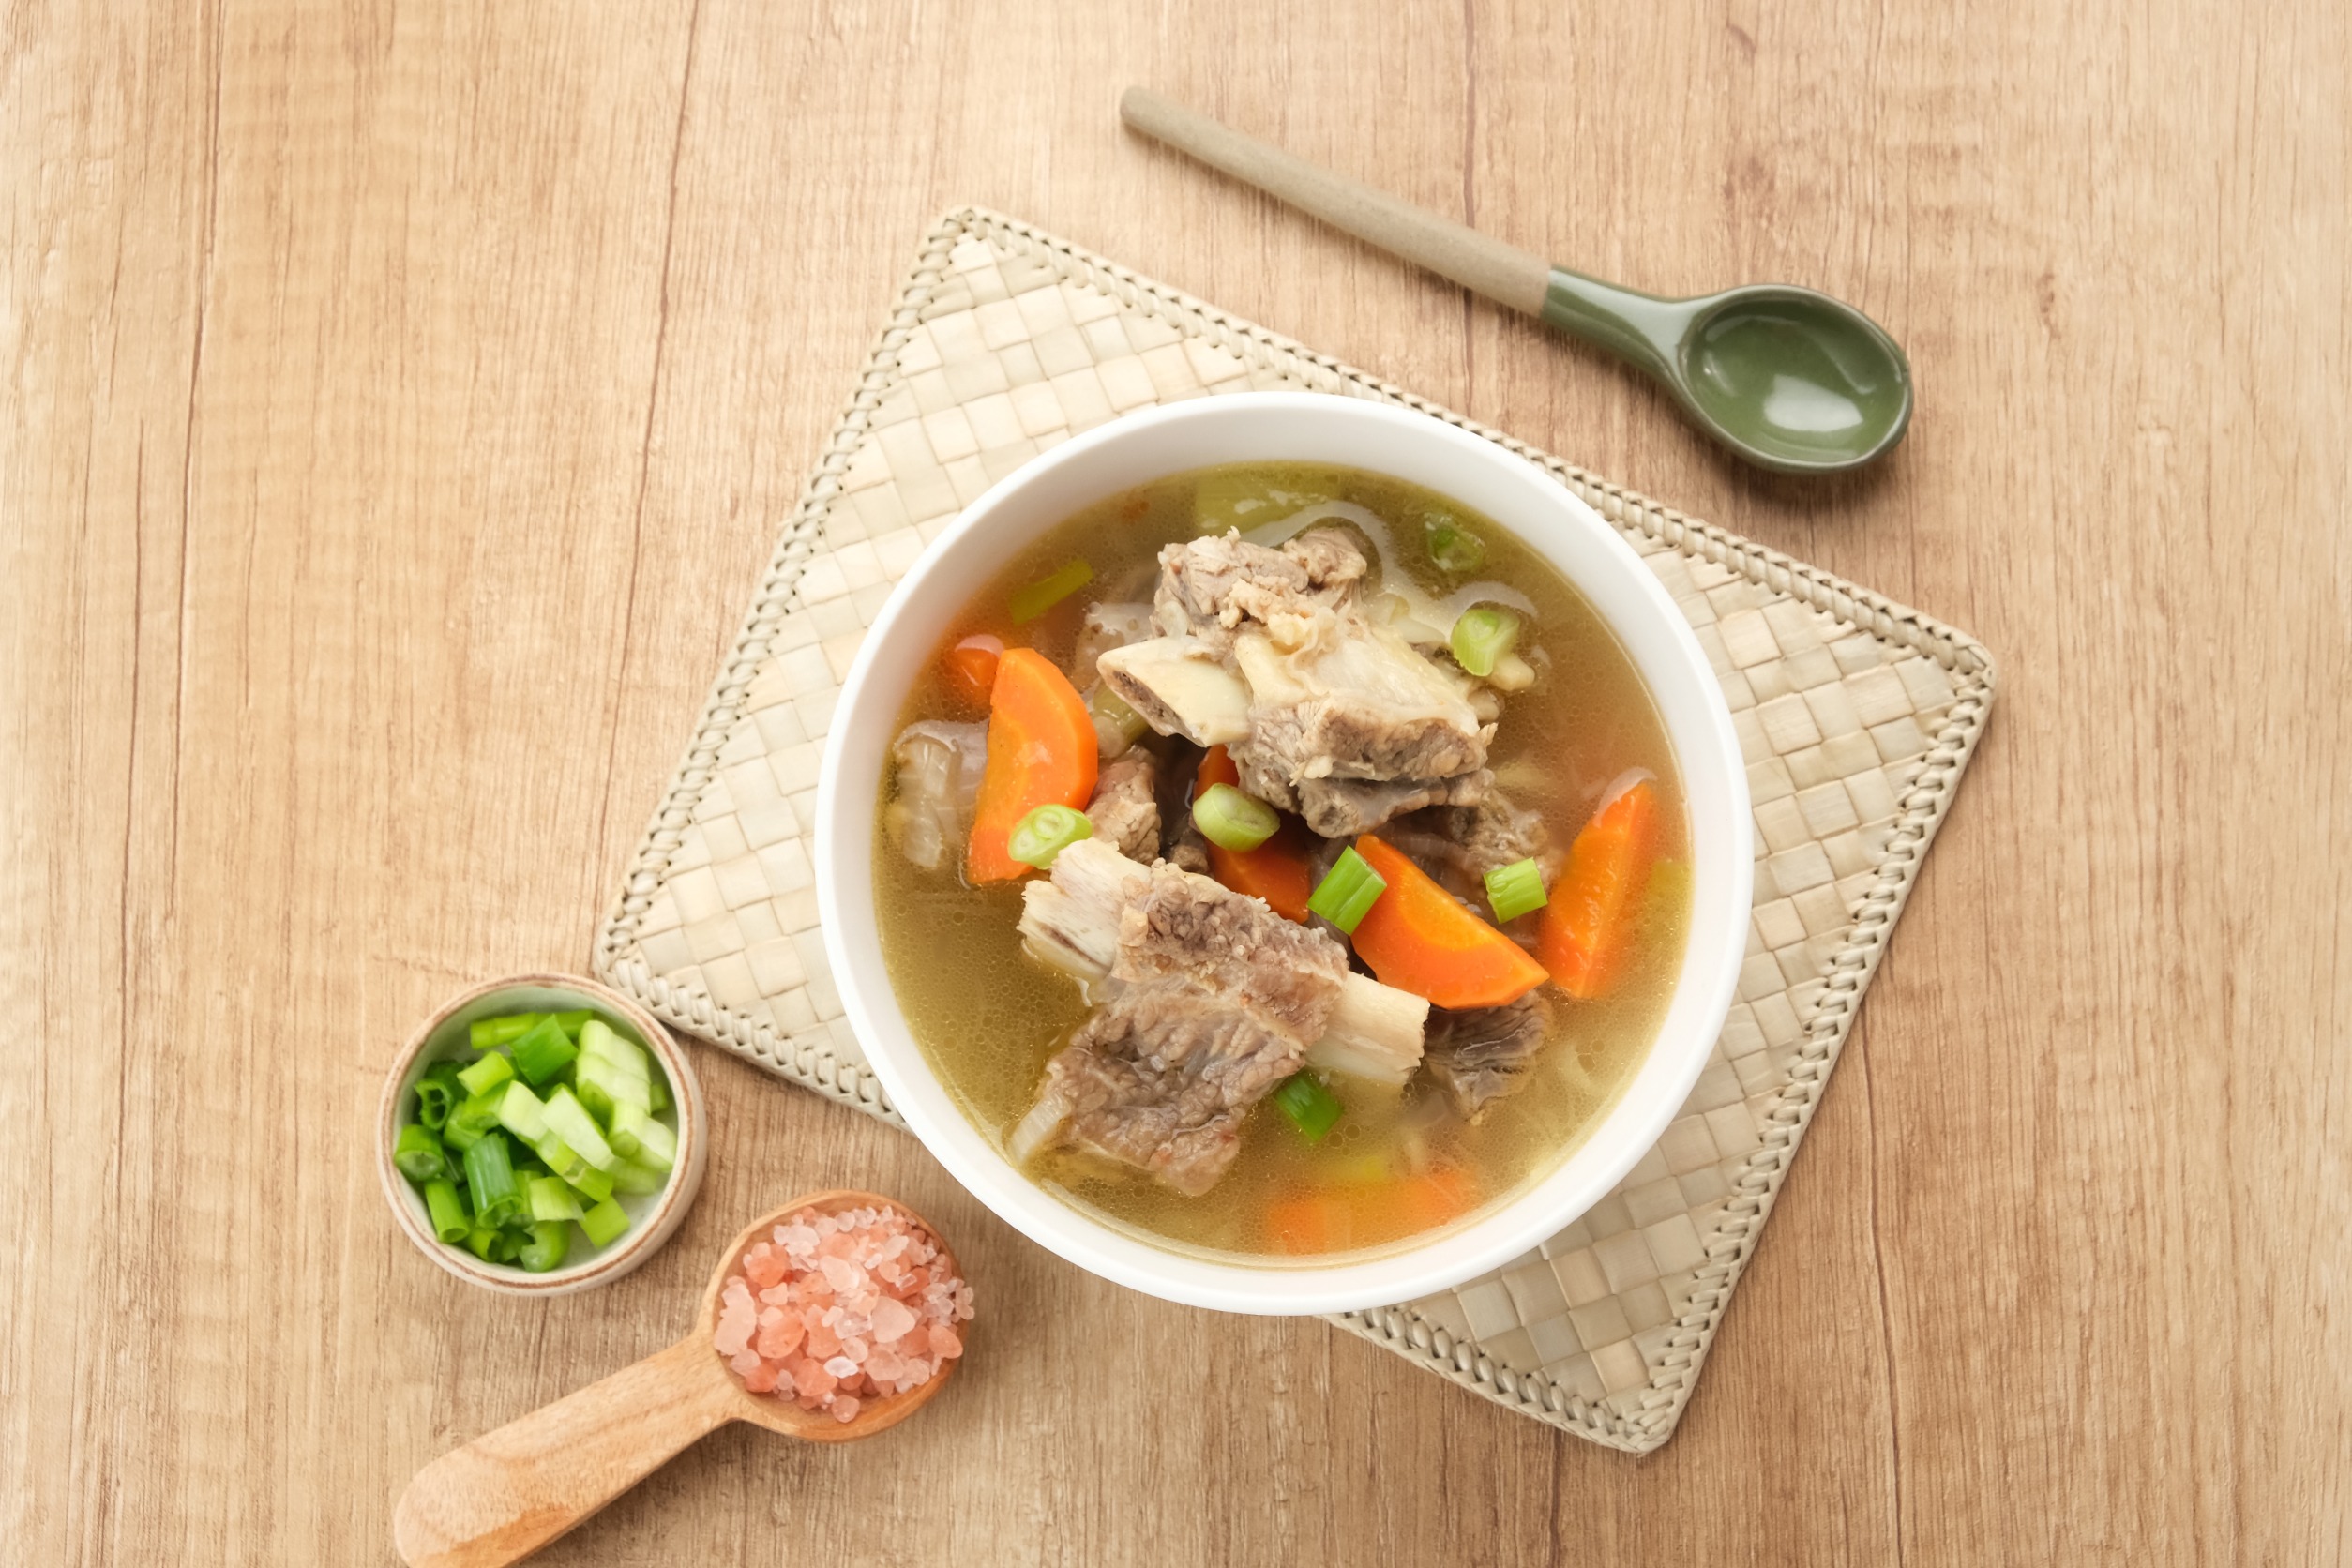 氣泡水入菜食譜推薦 冬天來燉排骨湯、做炸雞 溫暖妳的胃和心